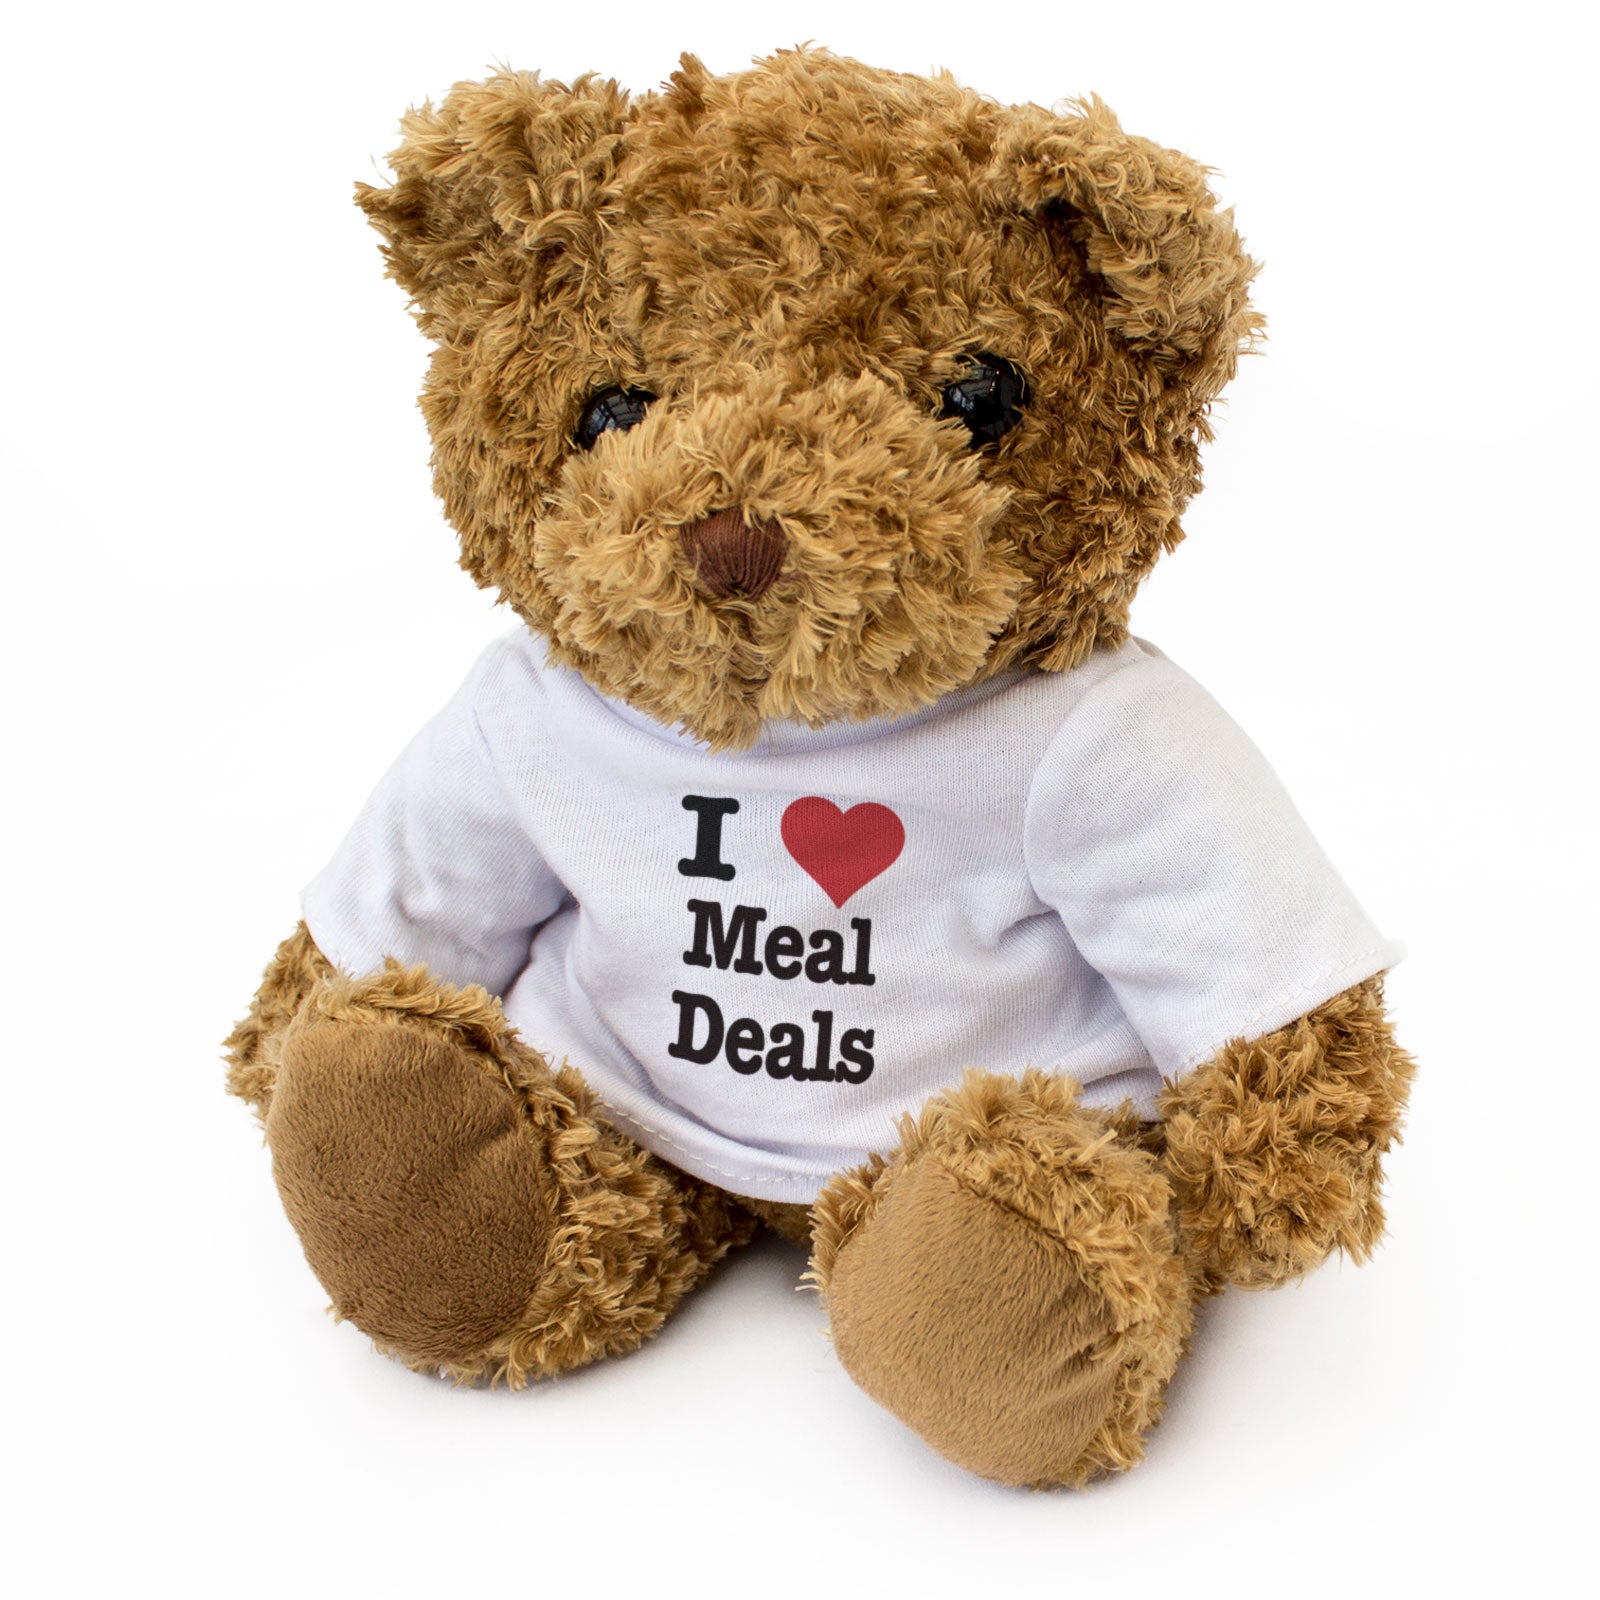 I Love Meal Deals - Teddy Bear